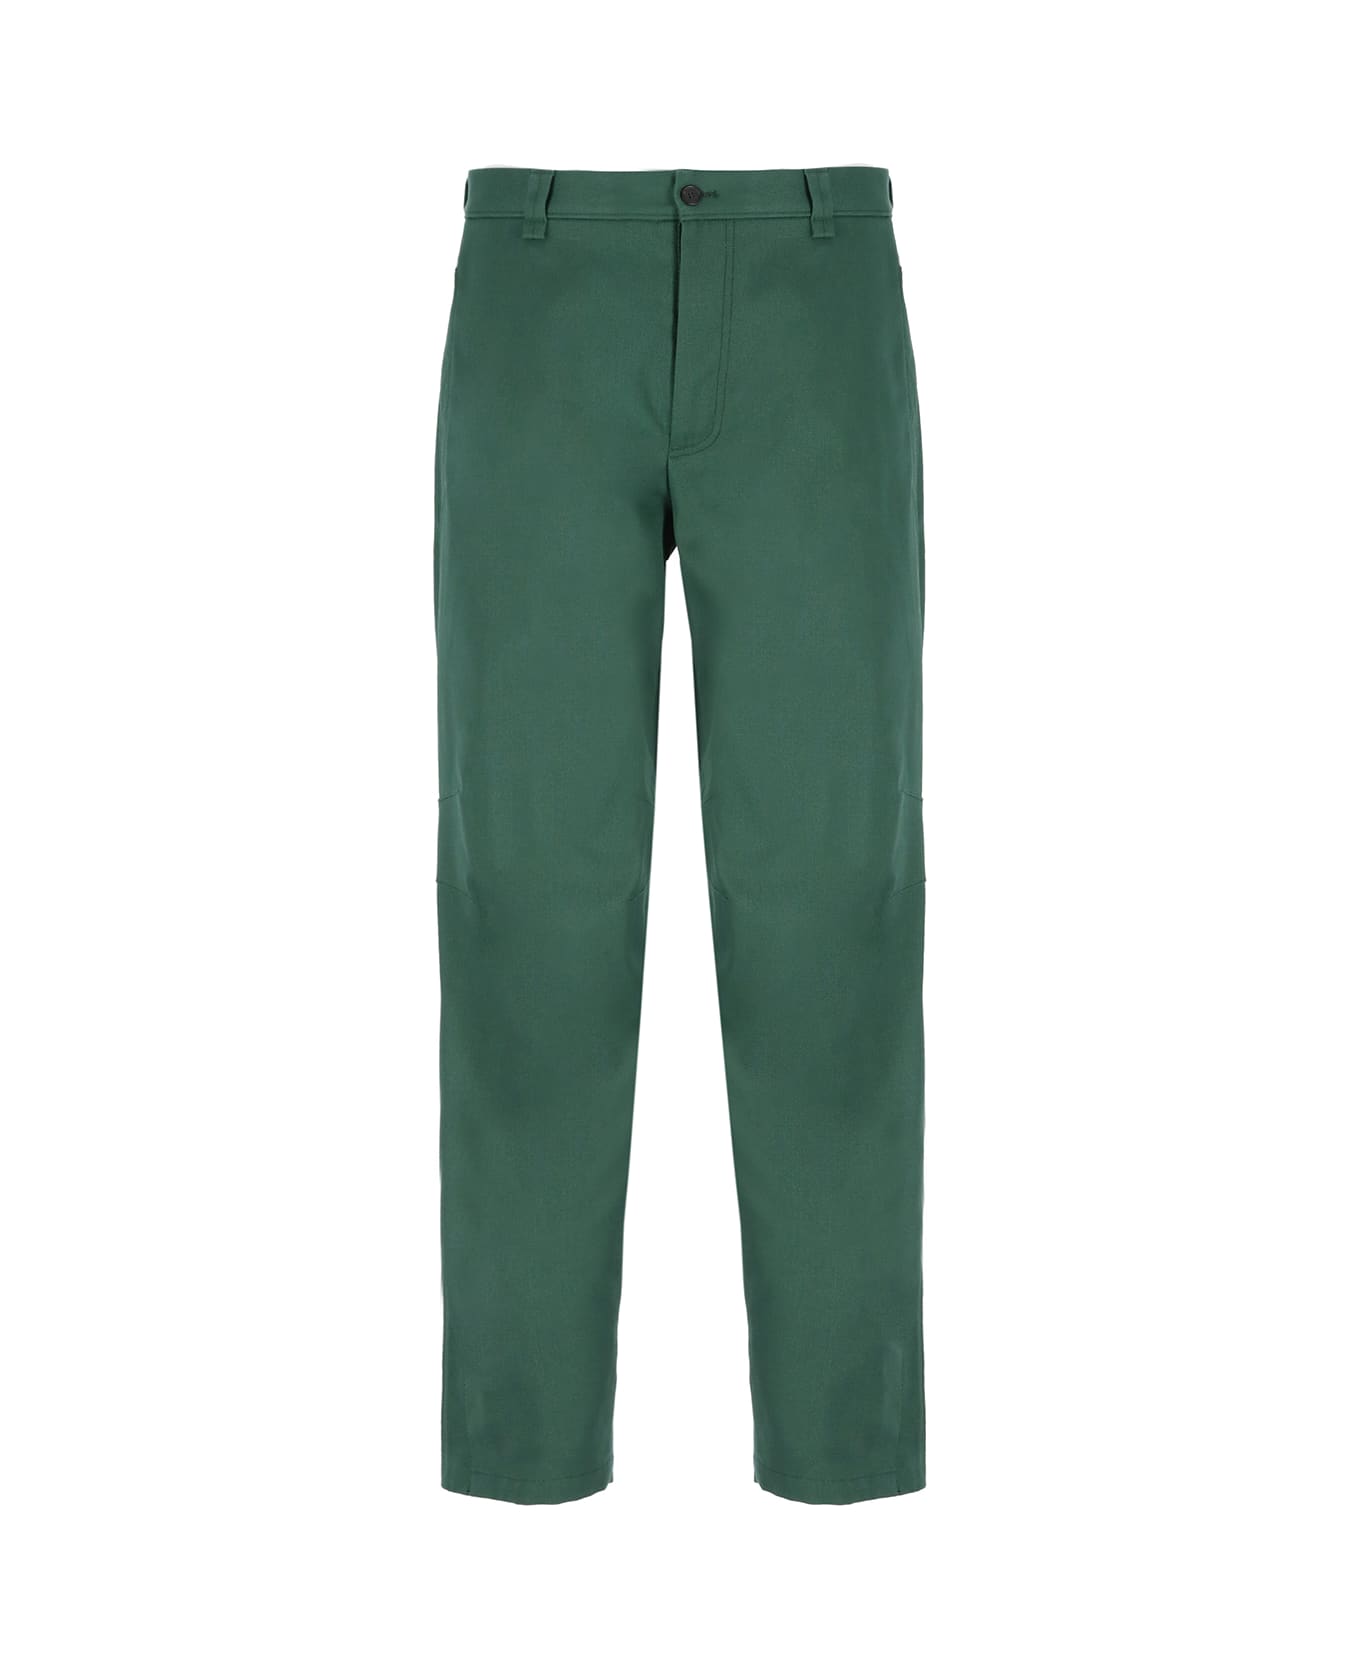 Lanvin Cotton Pants - Green ボトムス